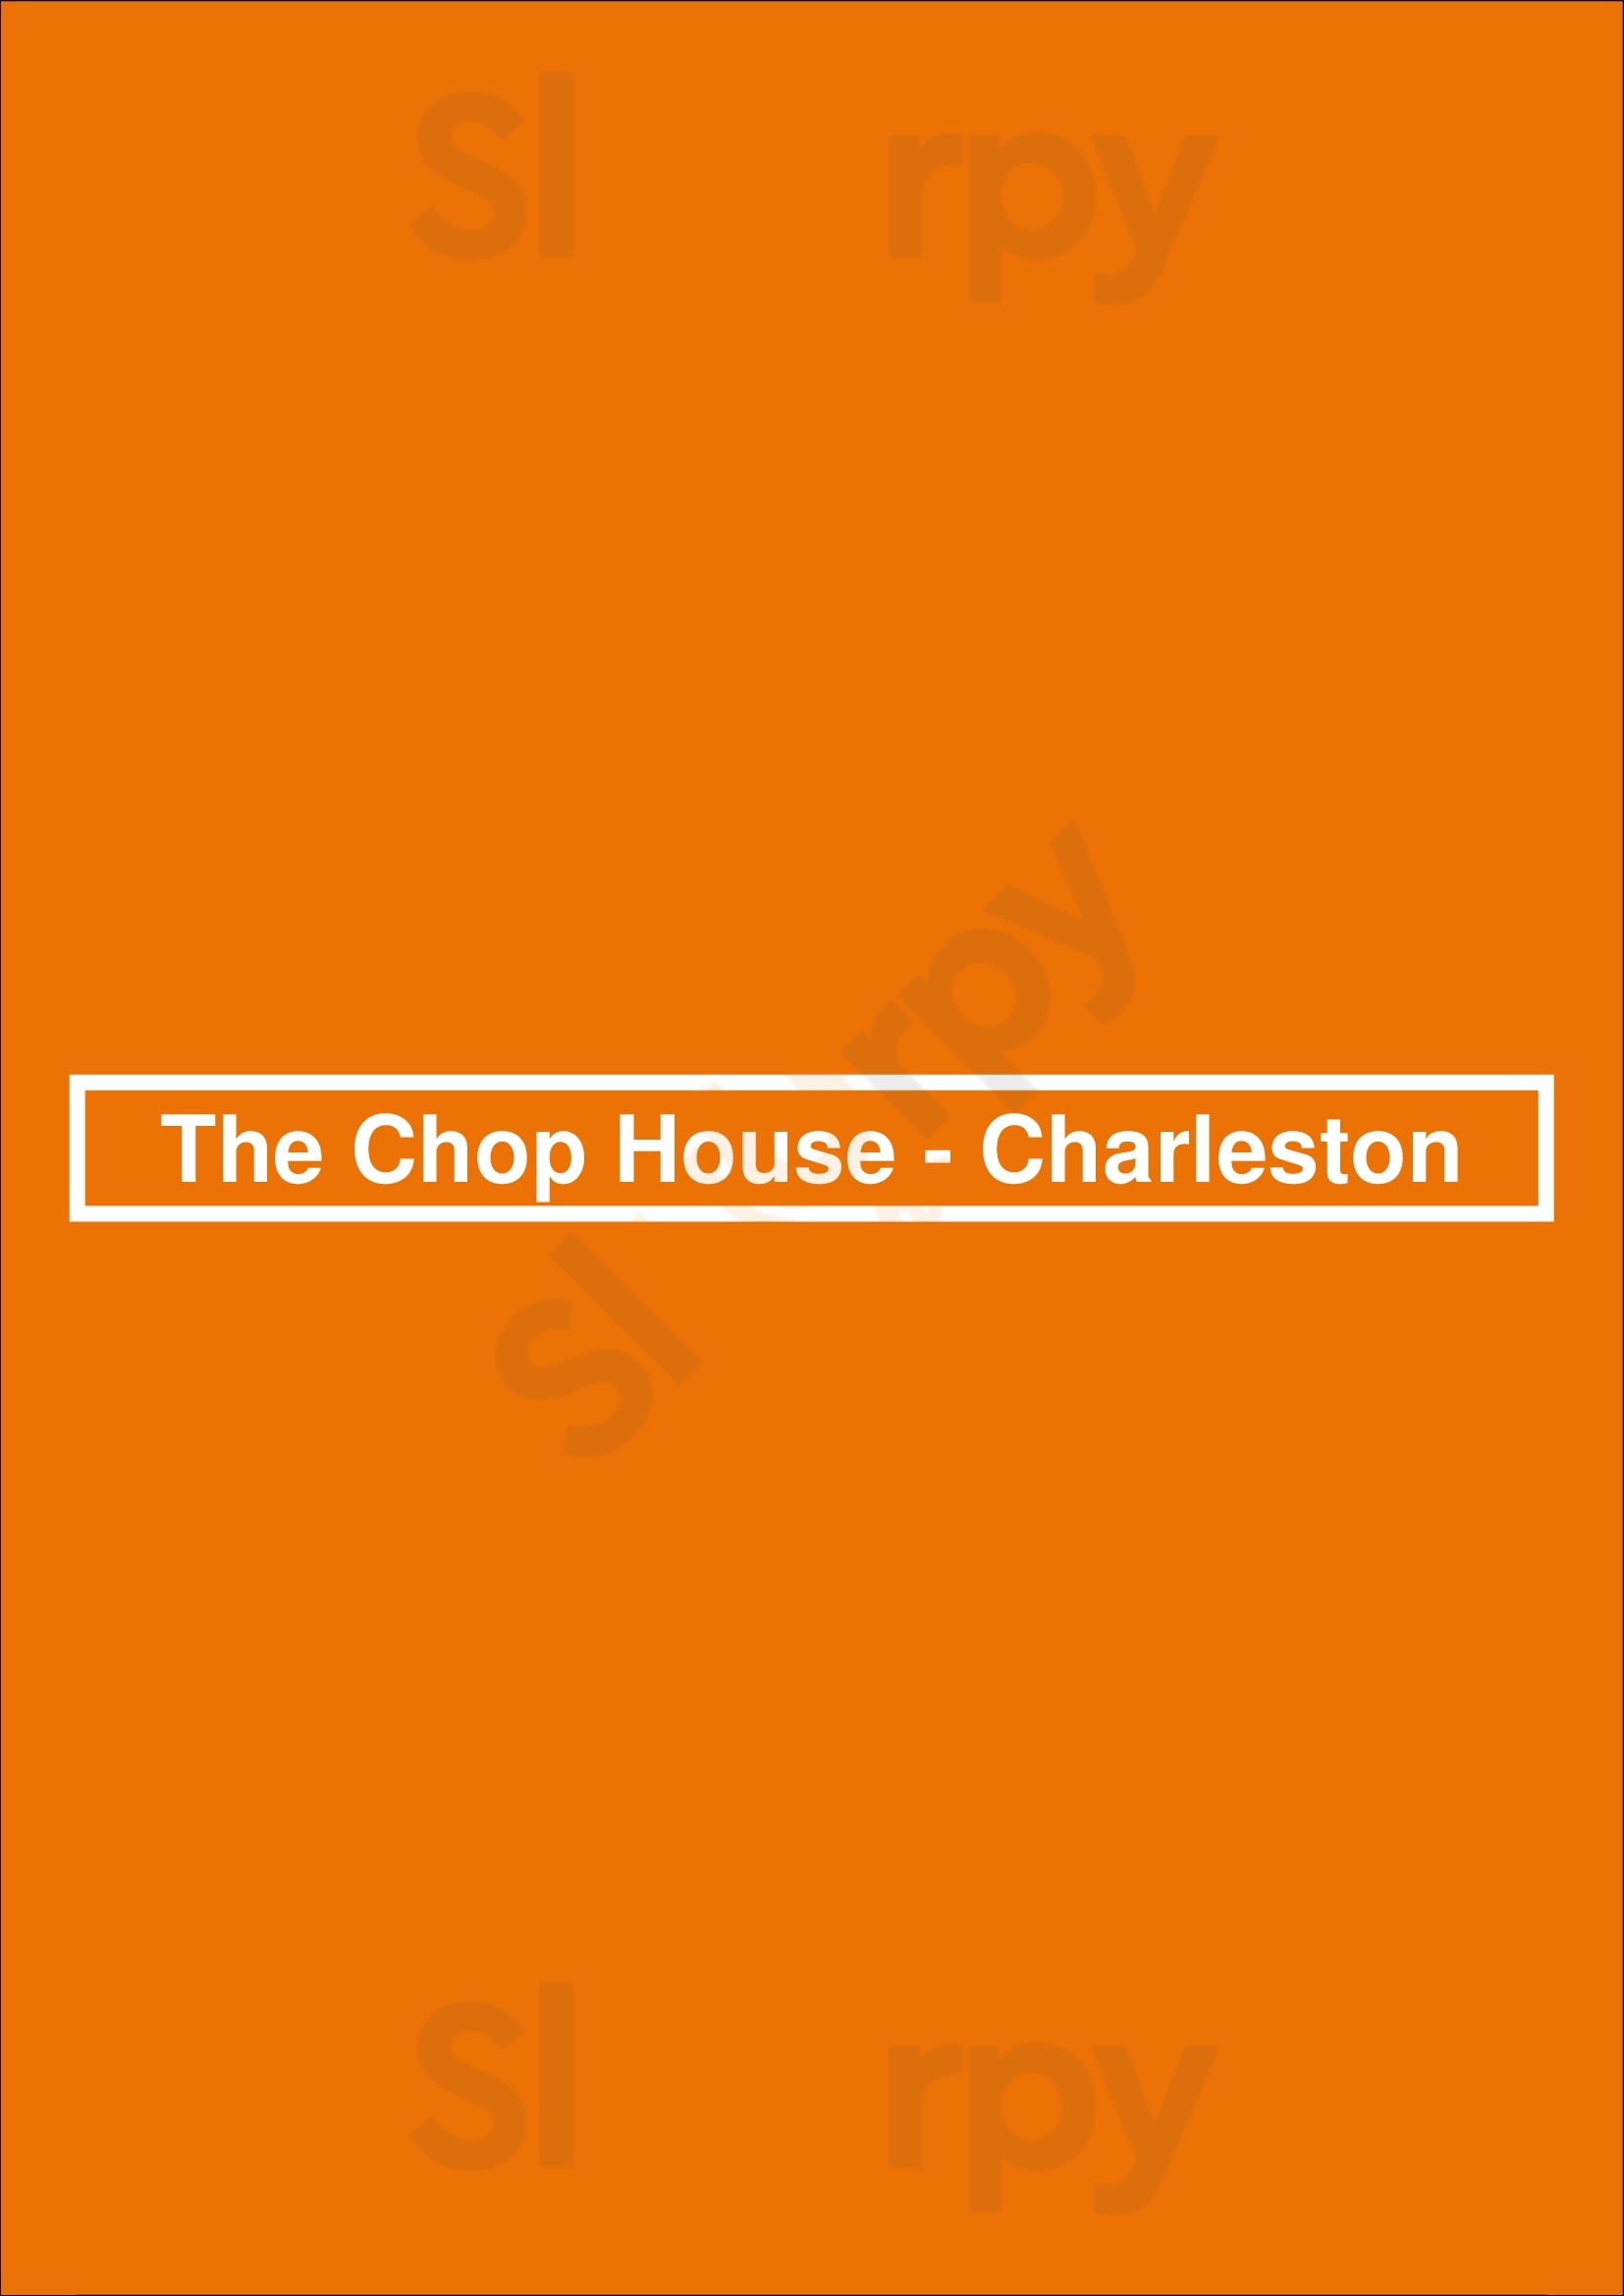 The Chop House - Charleston Charleston Menu - 1